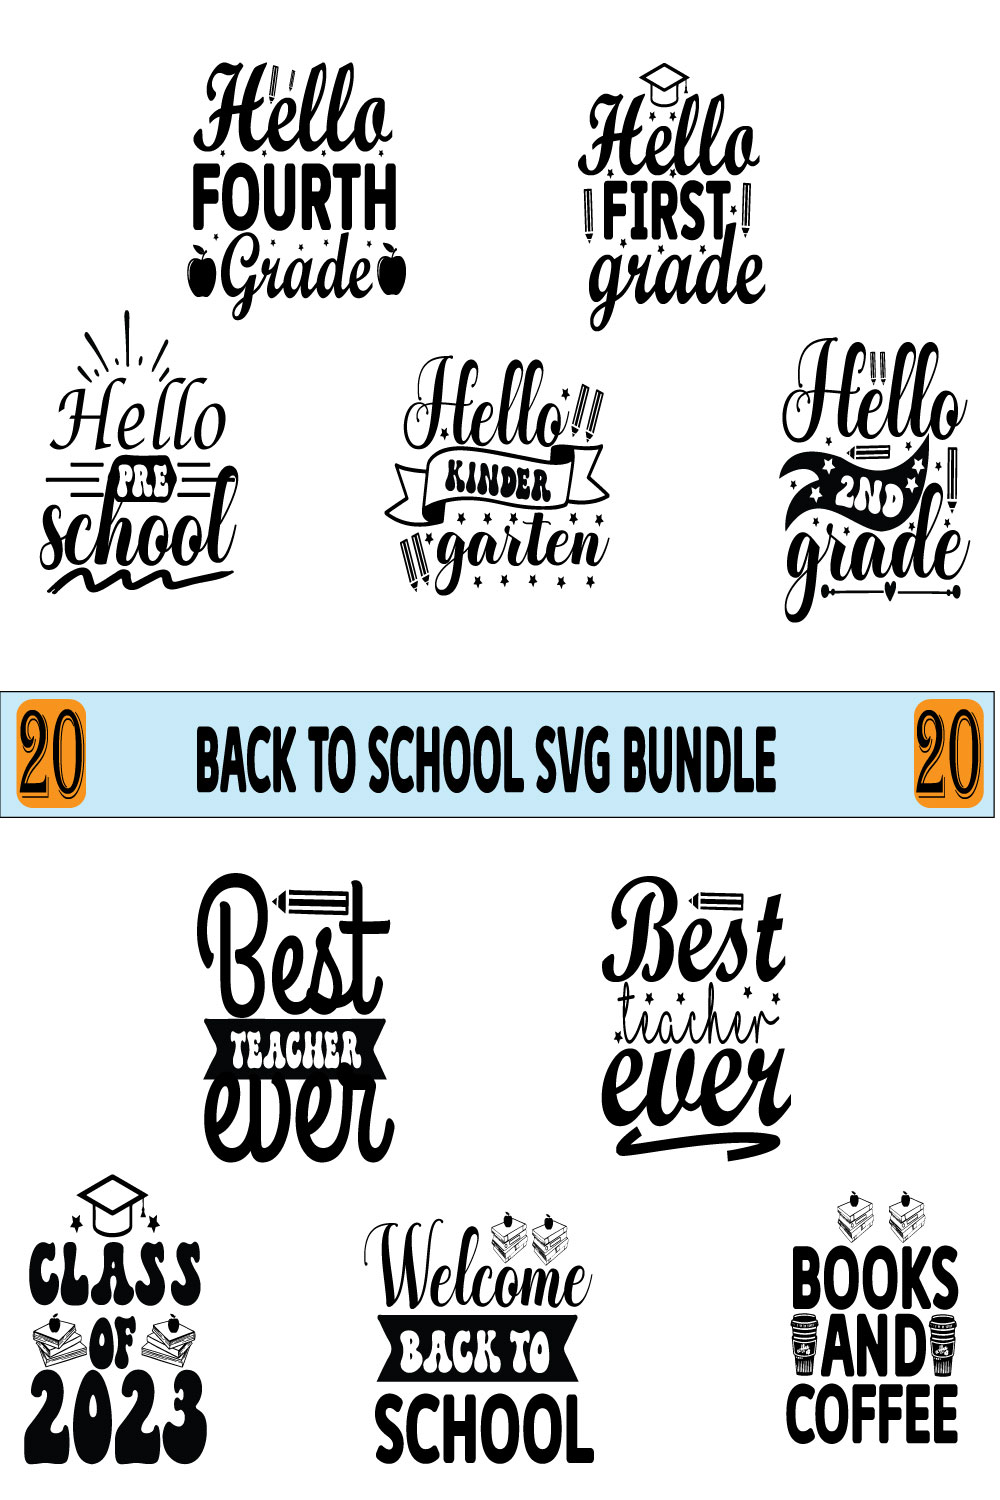 Back to School Bundle SVG Pinterest image.